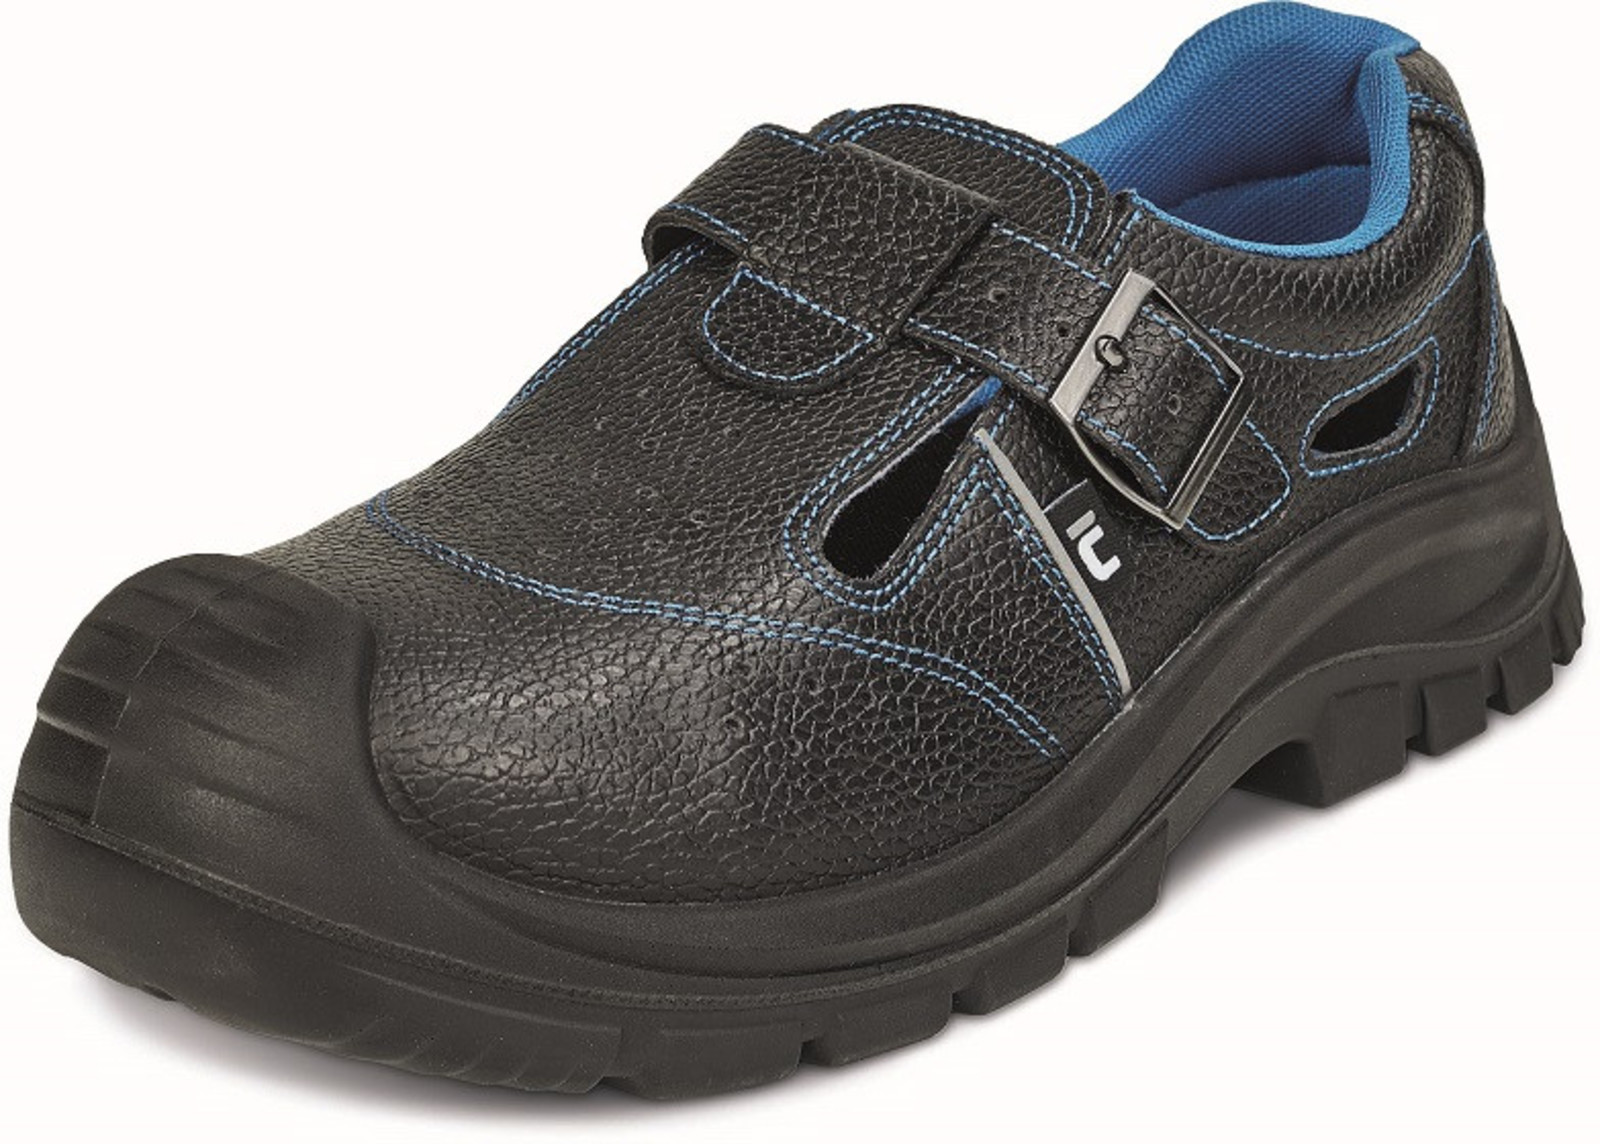 Bezpečnostné sandále Raven XT S1 SRC - veľkosť: 43, farba: čierna